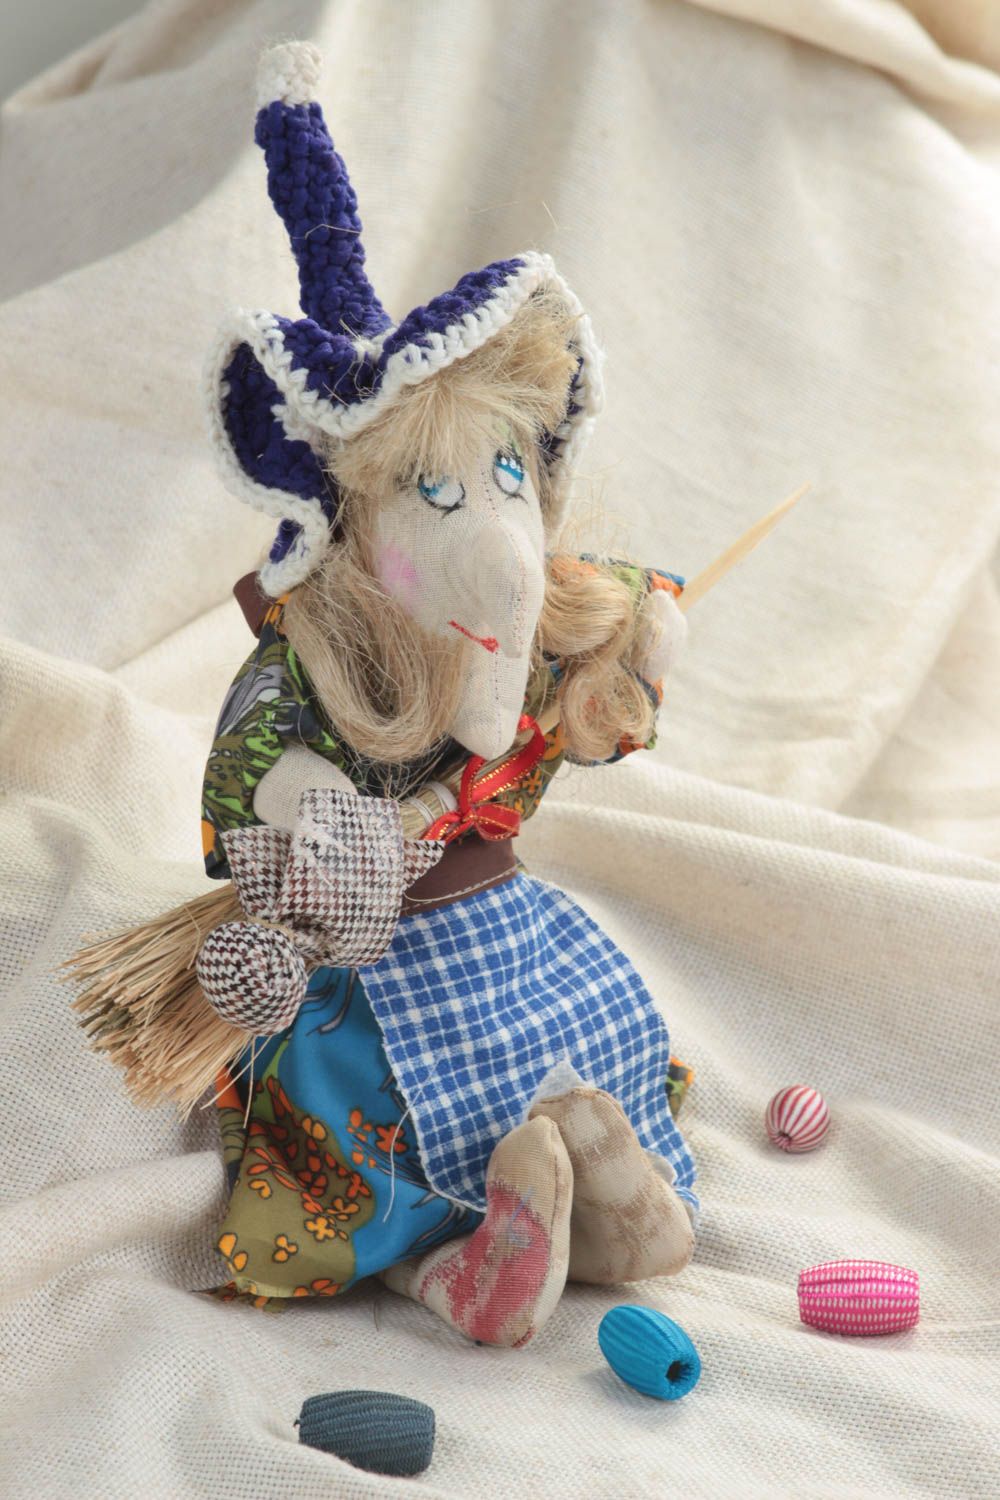 Игрушка кукла из ткани Баба яга небольшого размера в шляпе забавная хэнд мейд фото 1